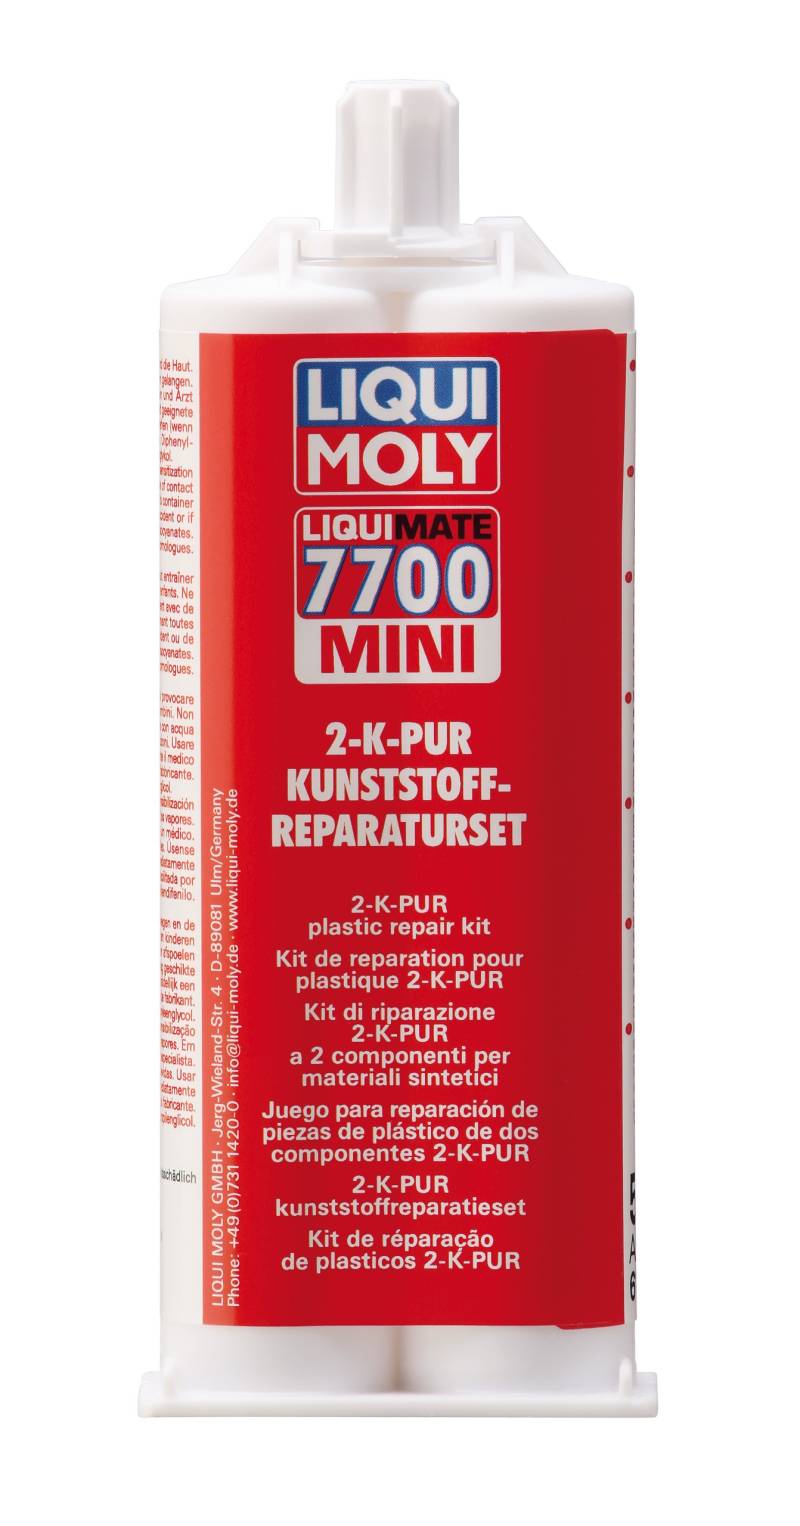 LIQUI MOLY Liquimate 7700 Mini Kartusche | 50 ml | Klebstoff | Art.-Nr.: 6162 von Liqui Moly